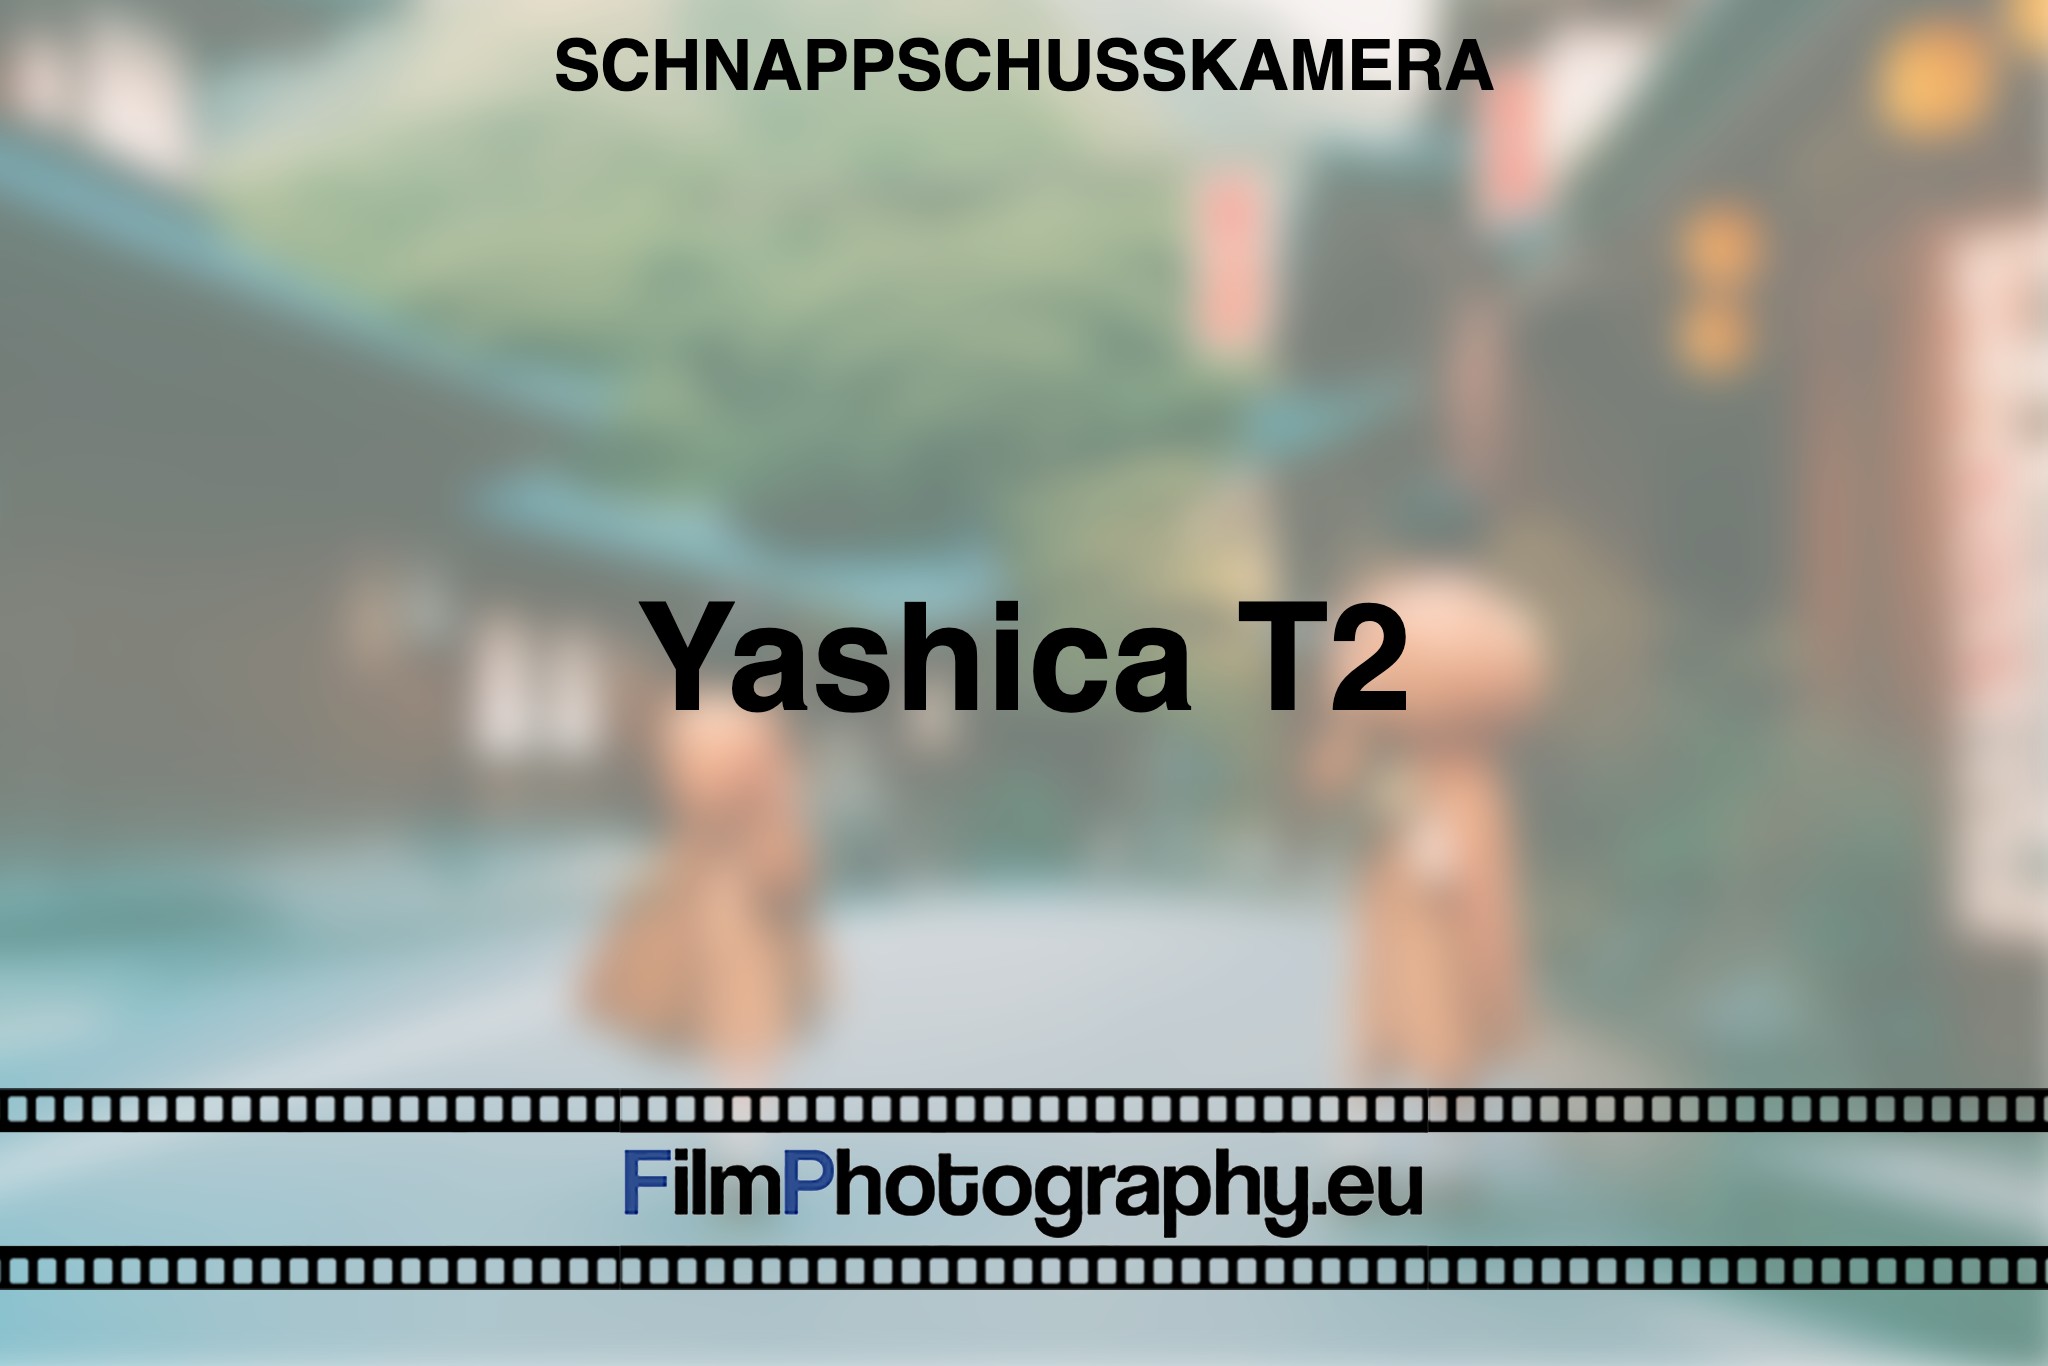 yashica-t2-schnappschusskamera-bnv